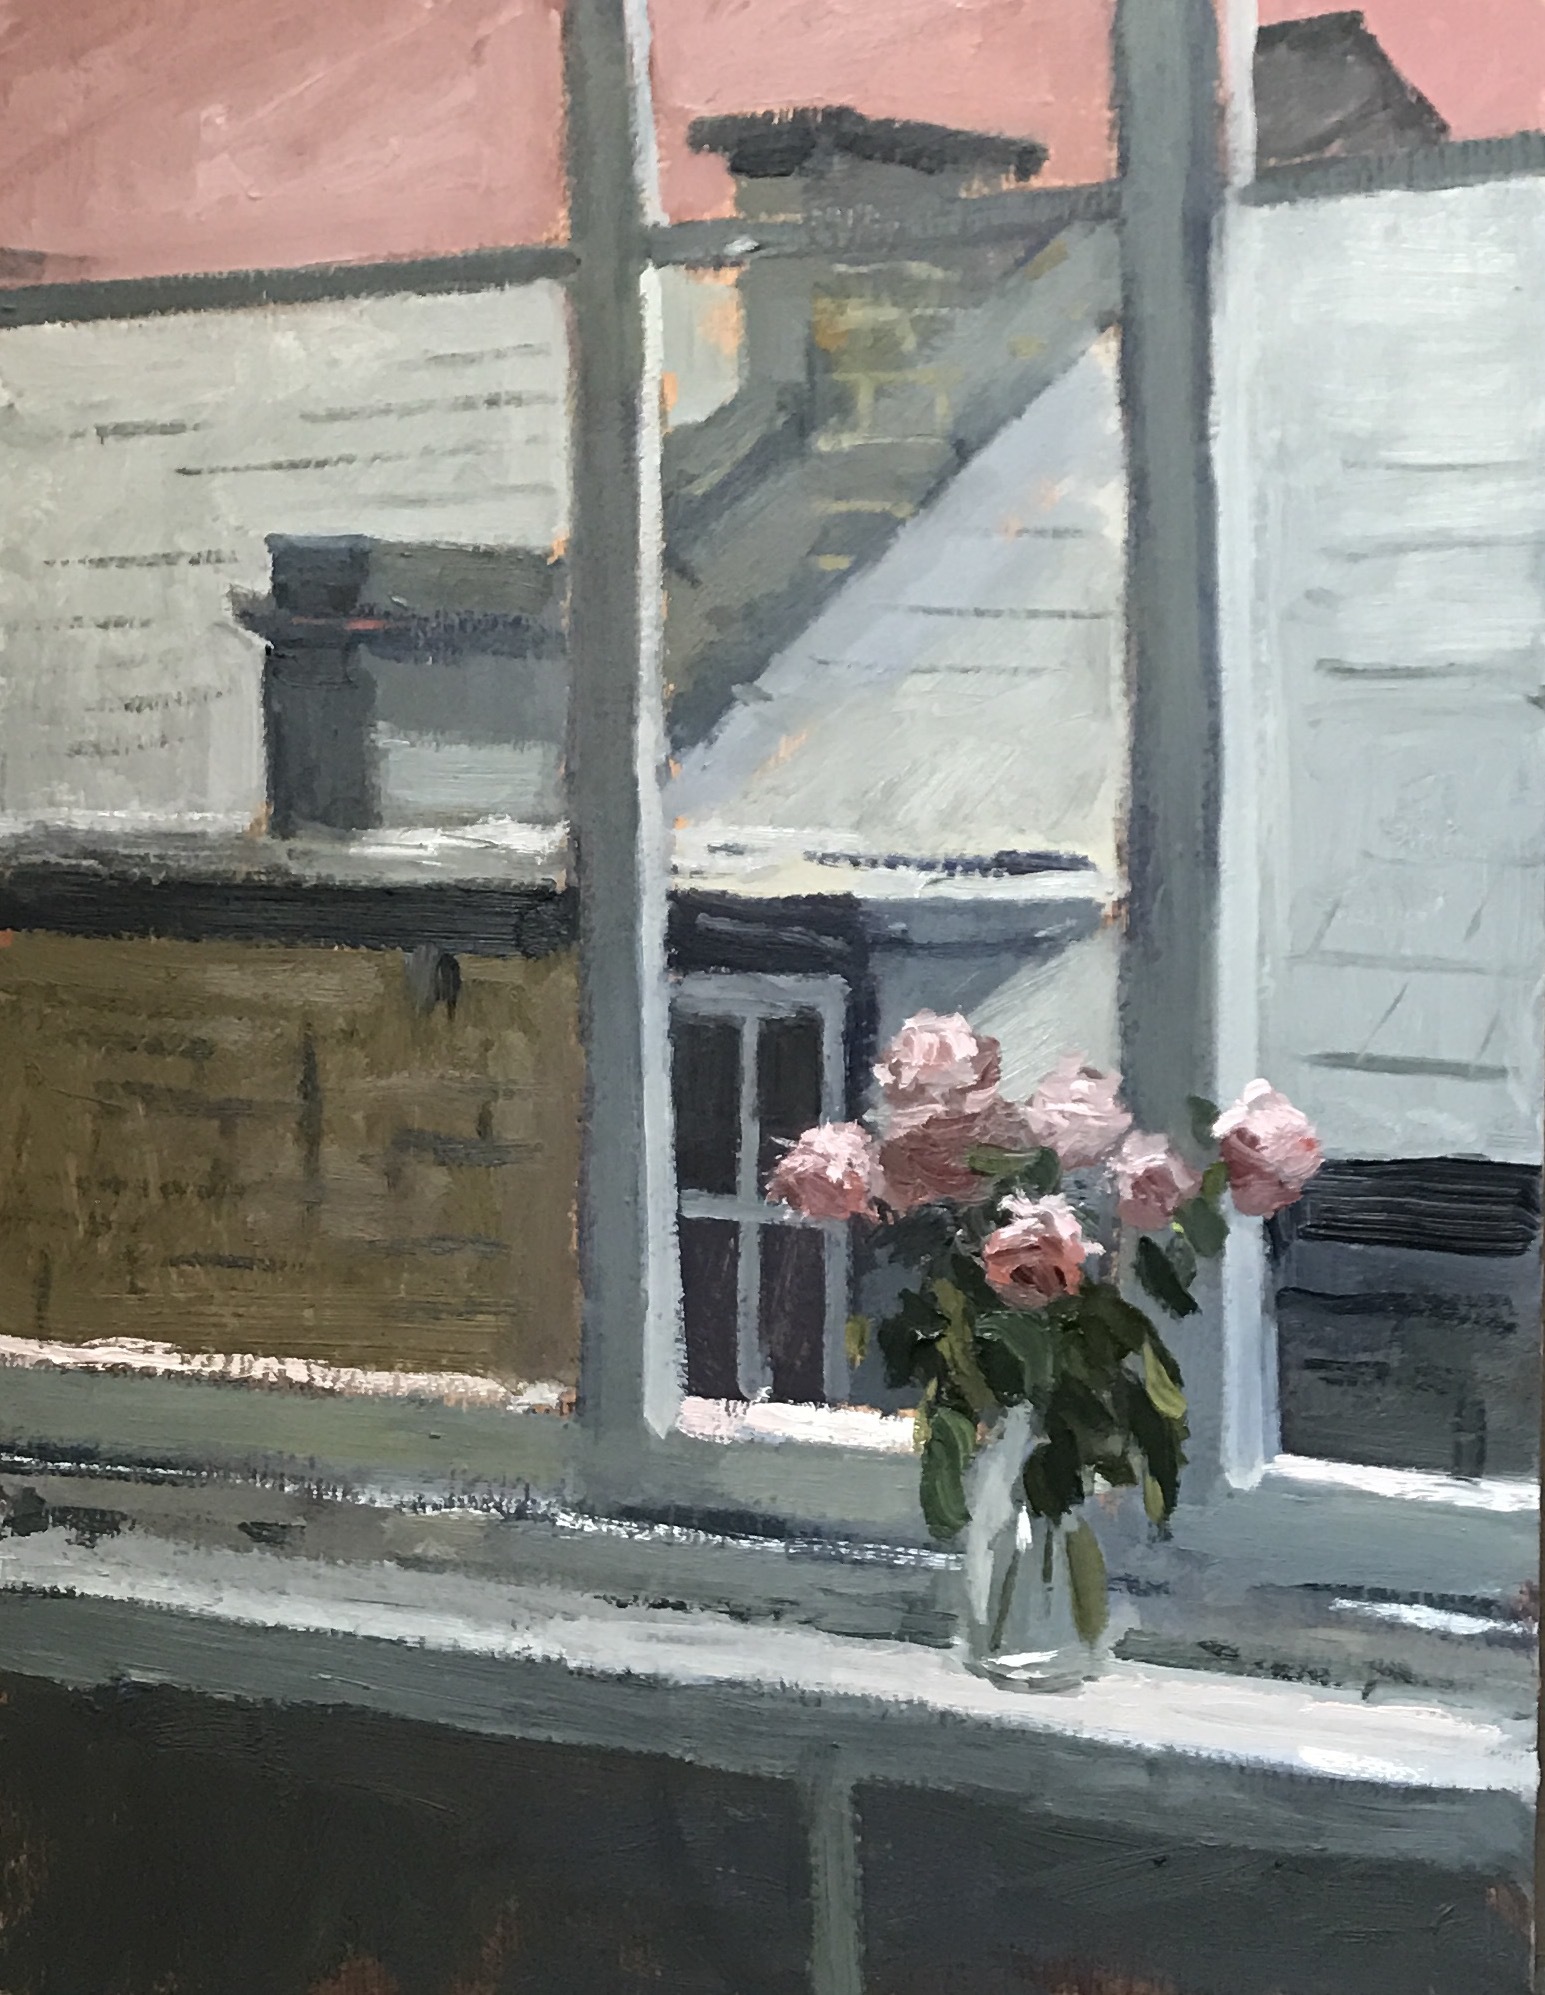 Sunday afternoon Studio windowsill